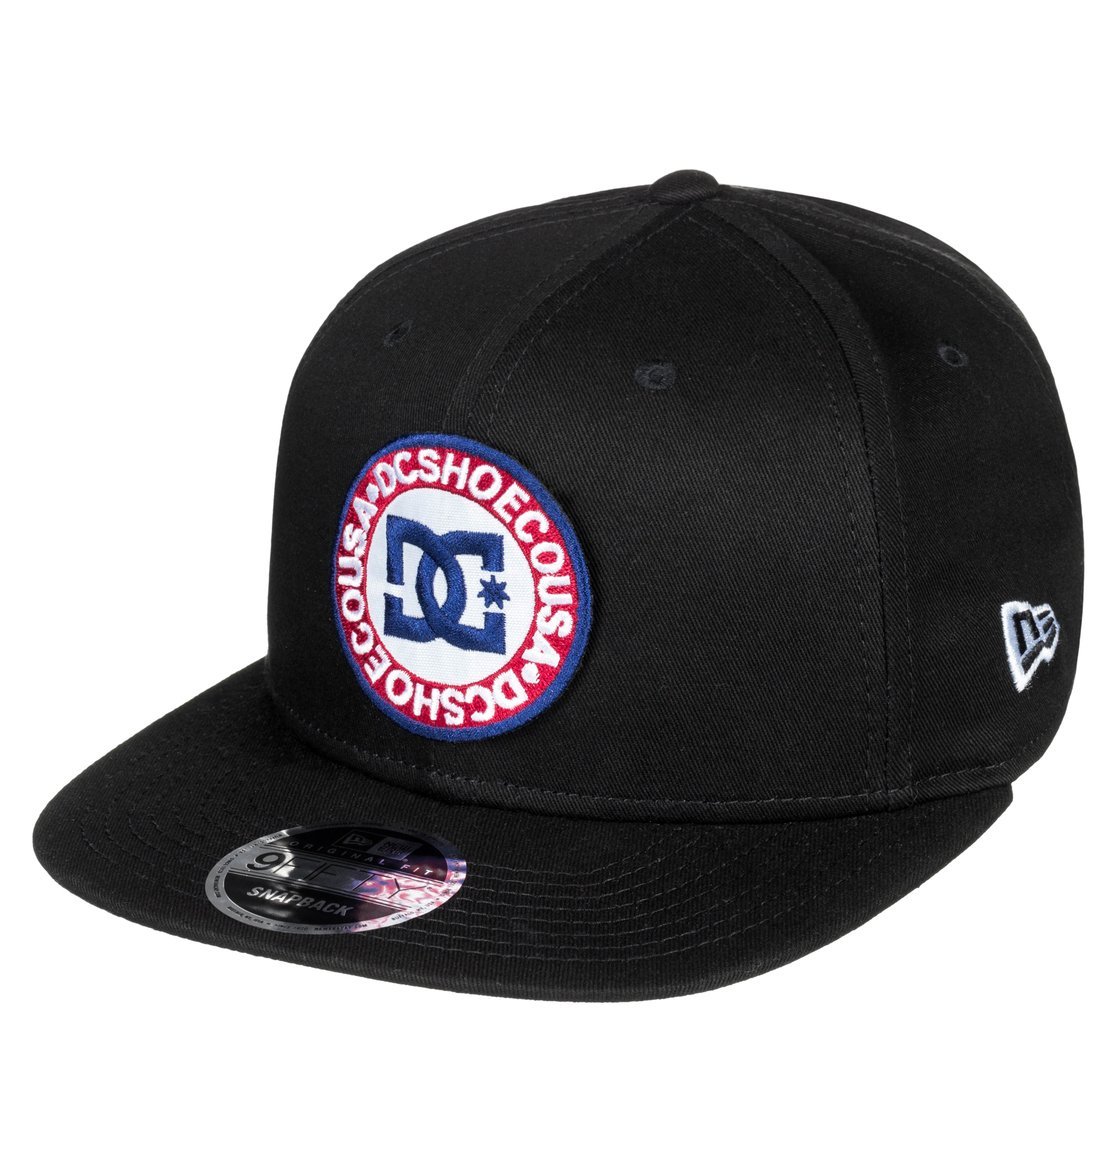 หมวก DC Speedeater Snapback Hat - Black [ADYHA03550-KVJ0]